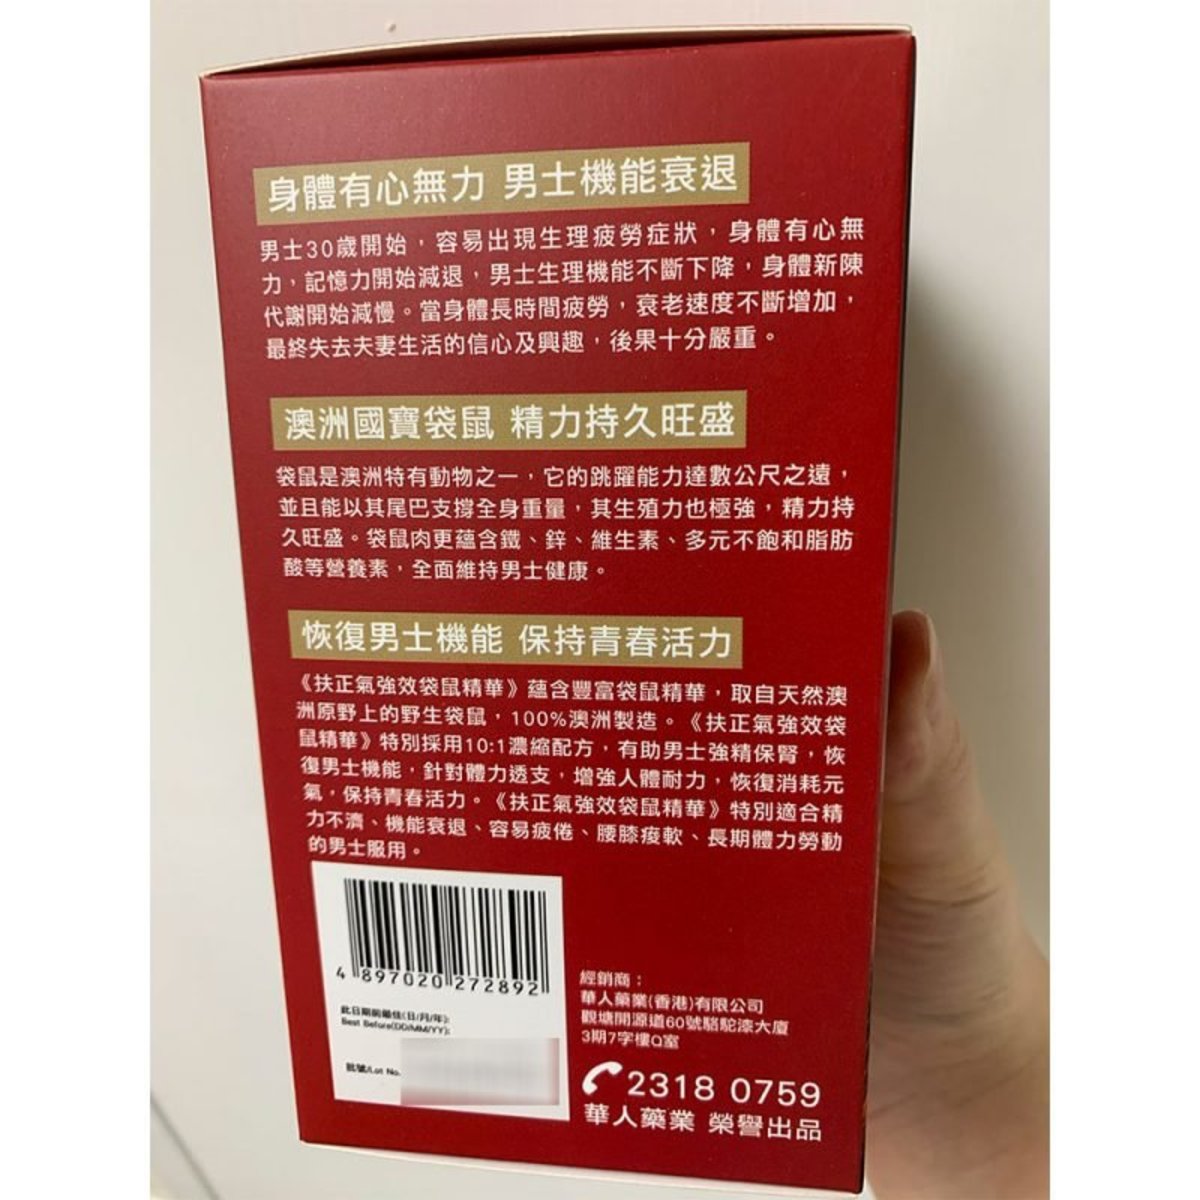 Fuzhengqi - Fuzhengqi 10:1 Concentrated Formula Potent Kangaroo Extract (60 Capsules) 